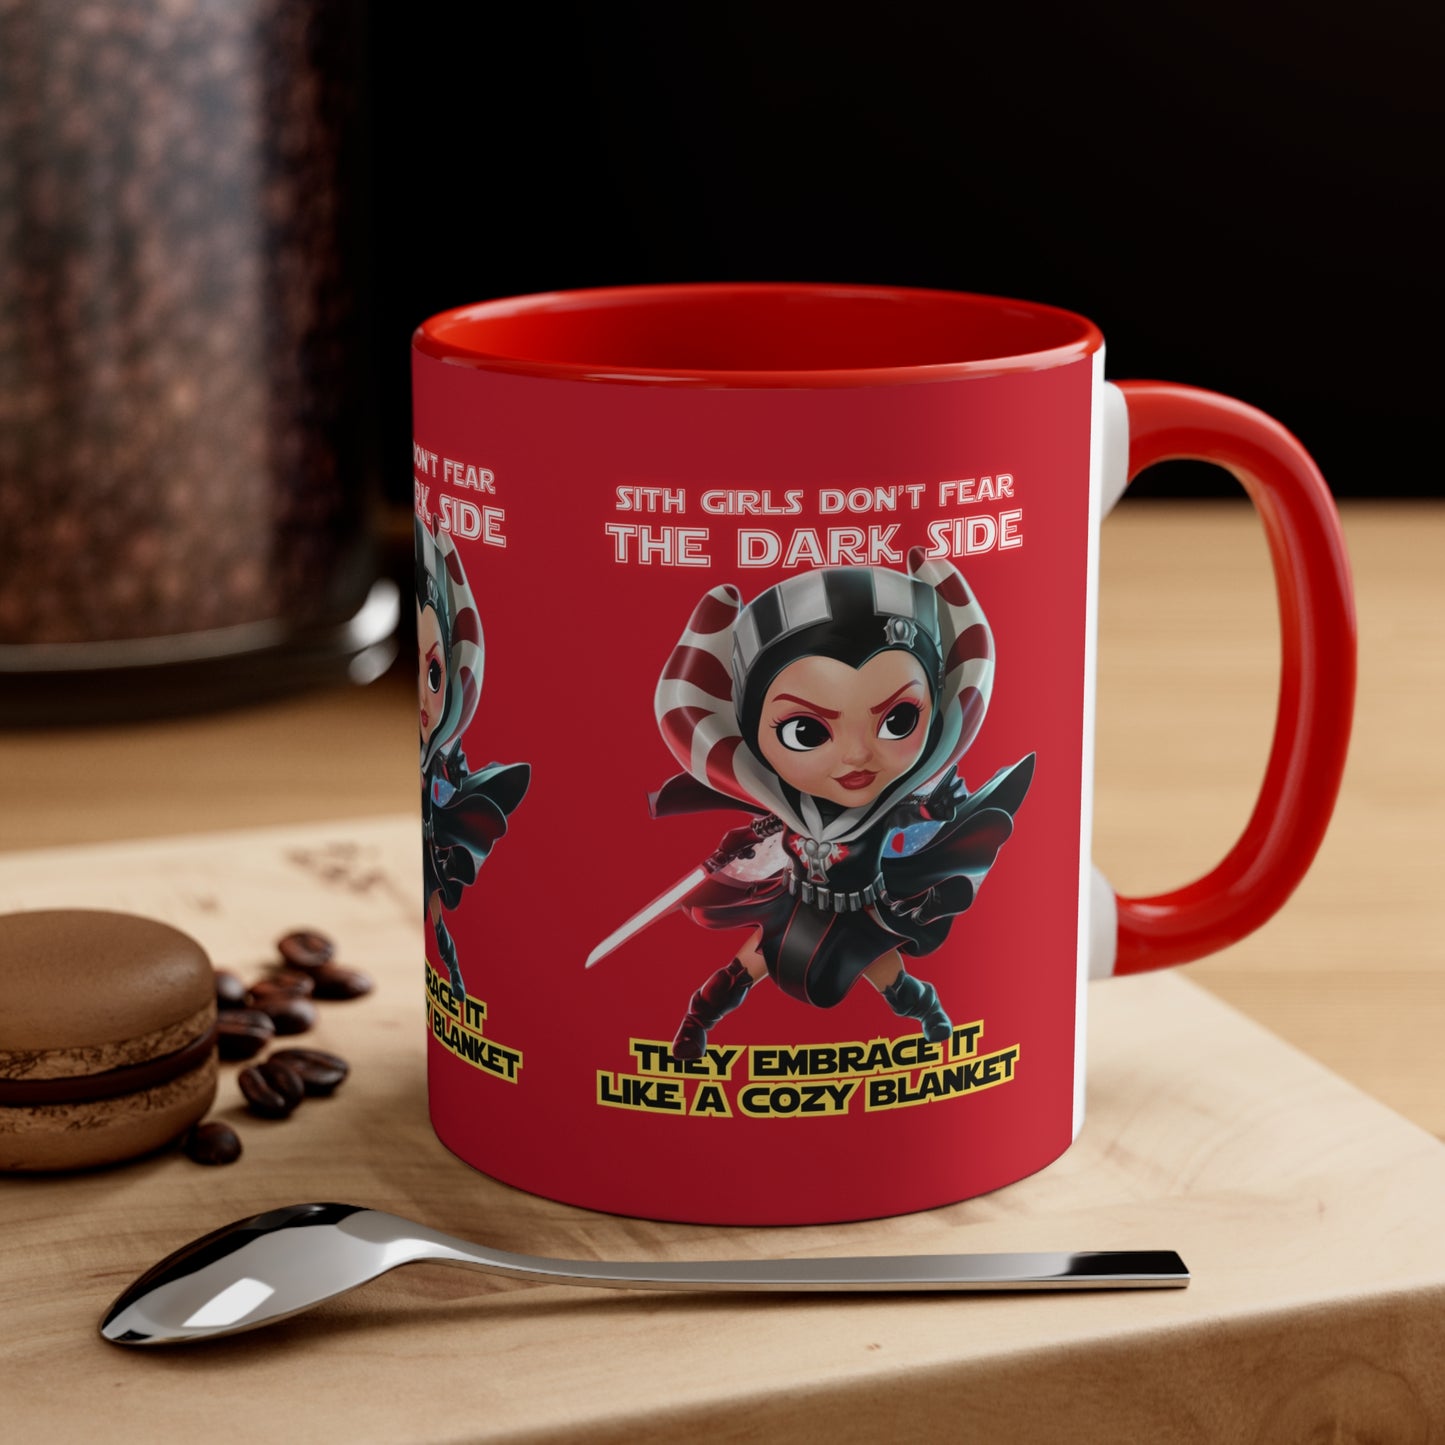 Sith Girls Don't Fear Coffee Mug, 11oz